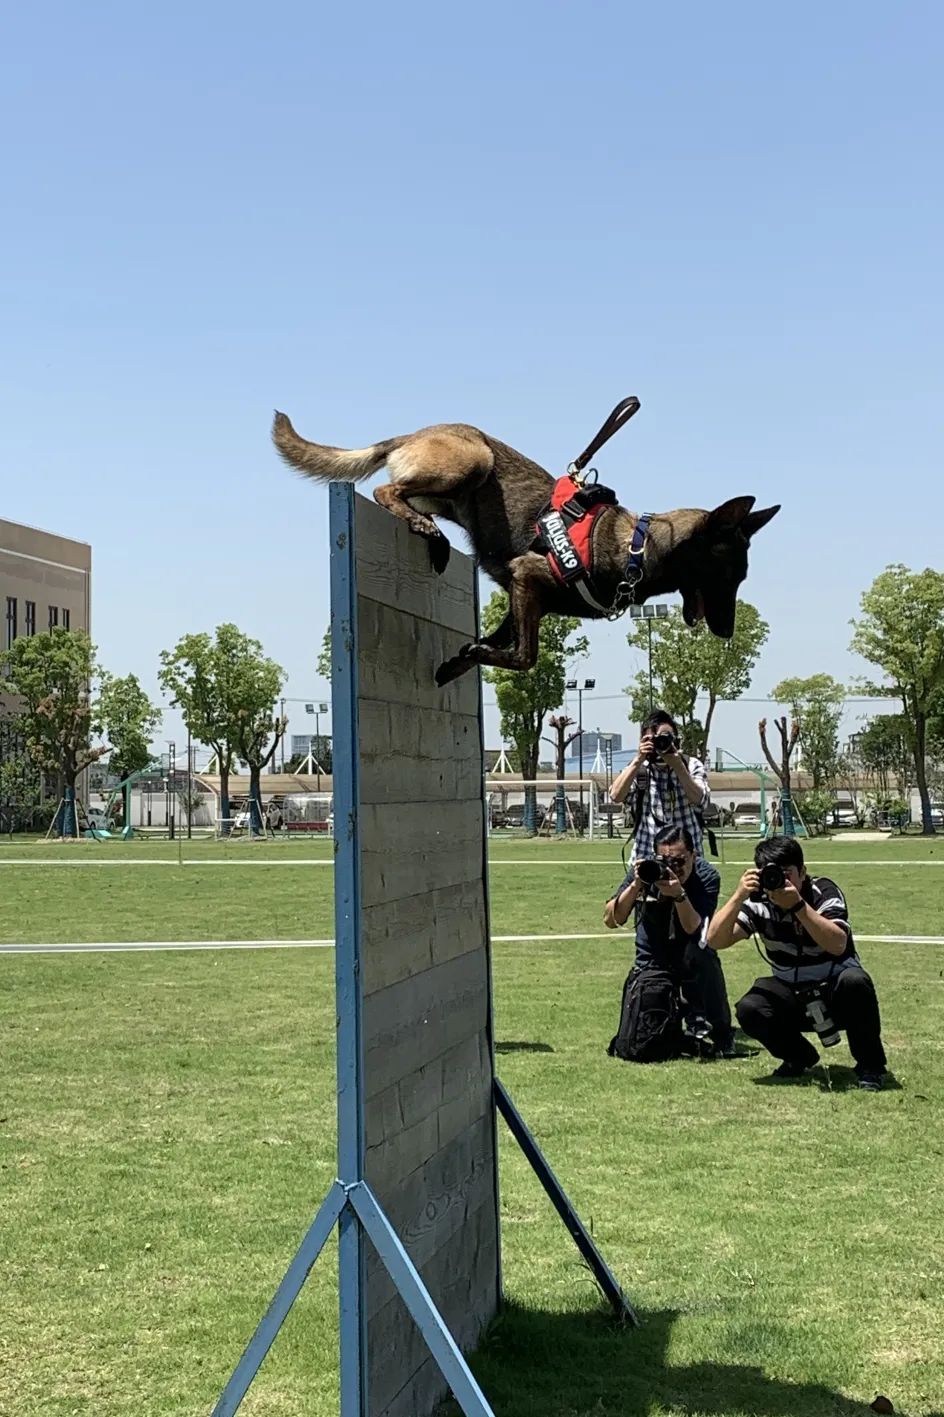 警犬训练基地海棠图片